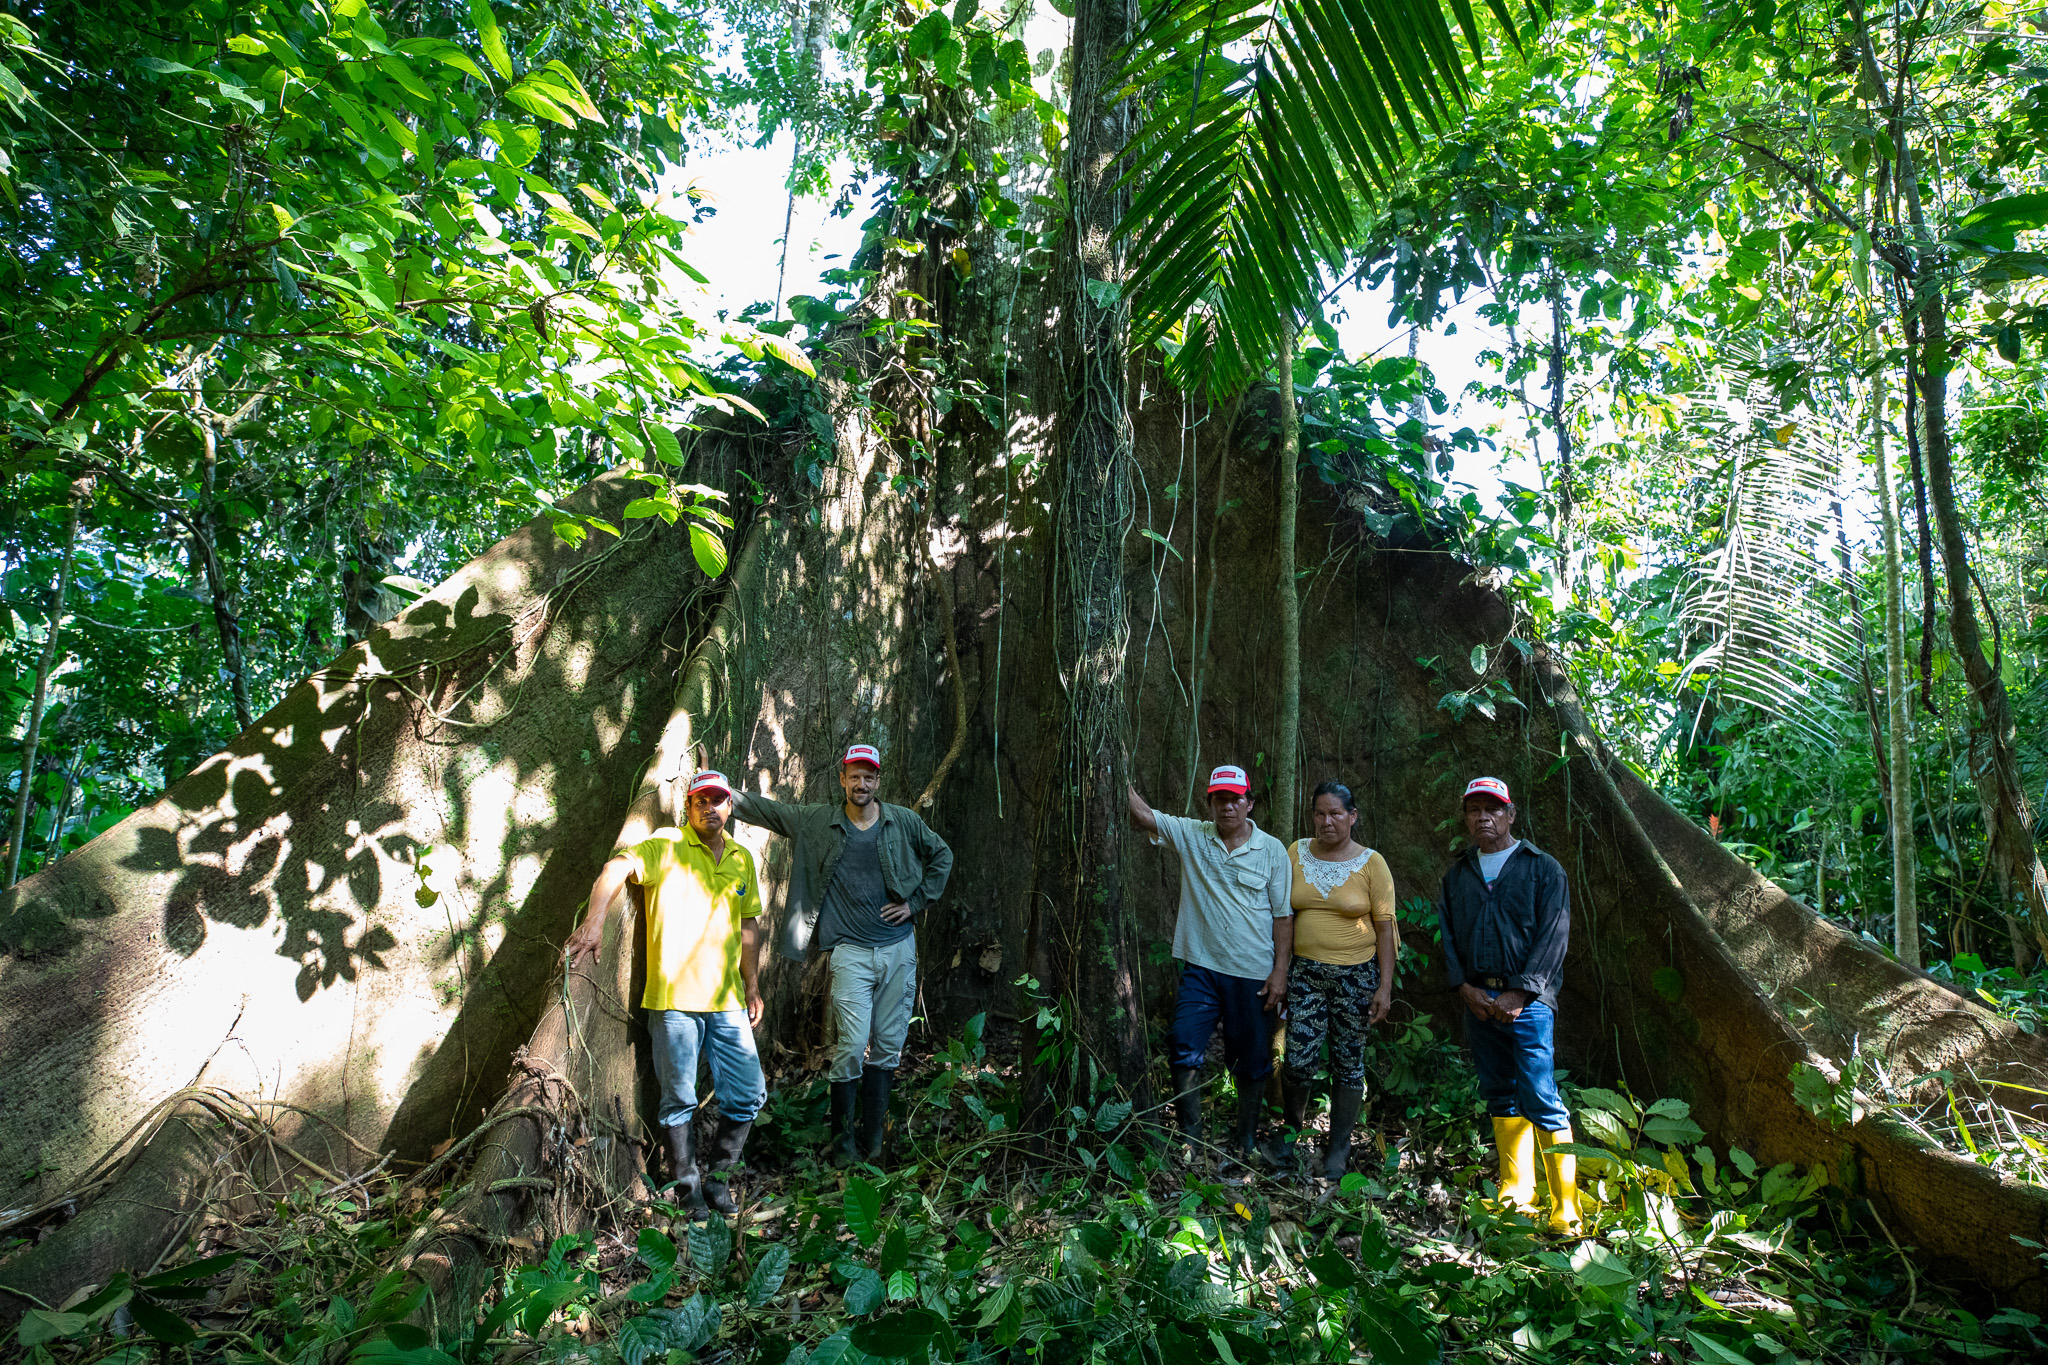 Romaldo der Präsident, Elisabeth die Schatzmeisterin sowie Roque von der Kooperative CSY und der Projektkoordinator ChocoSamona der Csf vor dem Regenwaldriesen Ceibo (in Kichwa "Samona" genannt). Einer der zahlreichen schützenswerten Schätze des Amazonas!